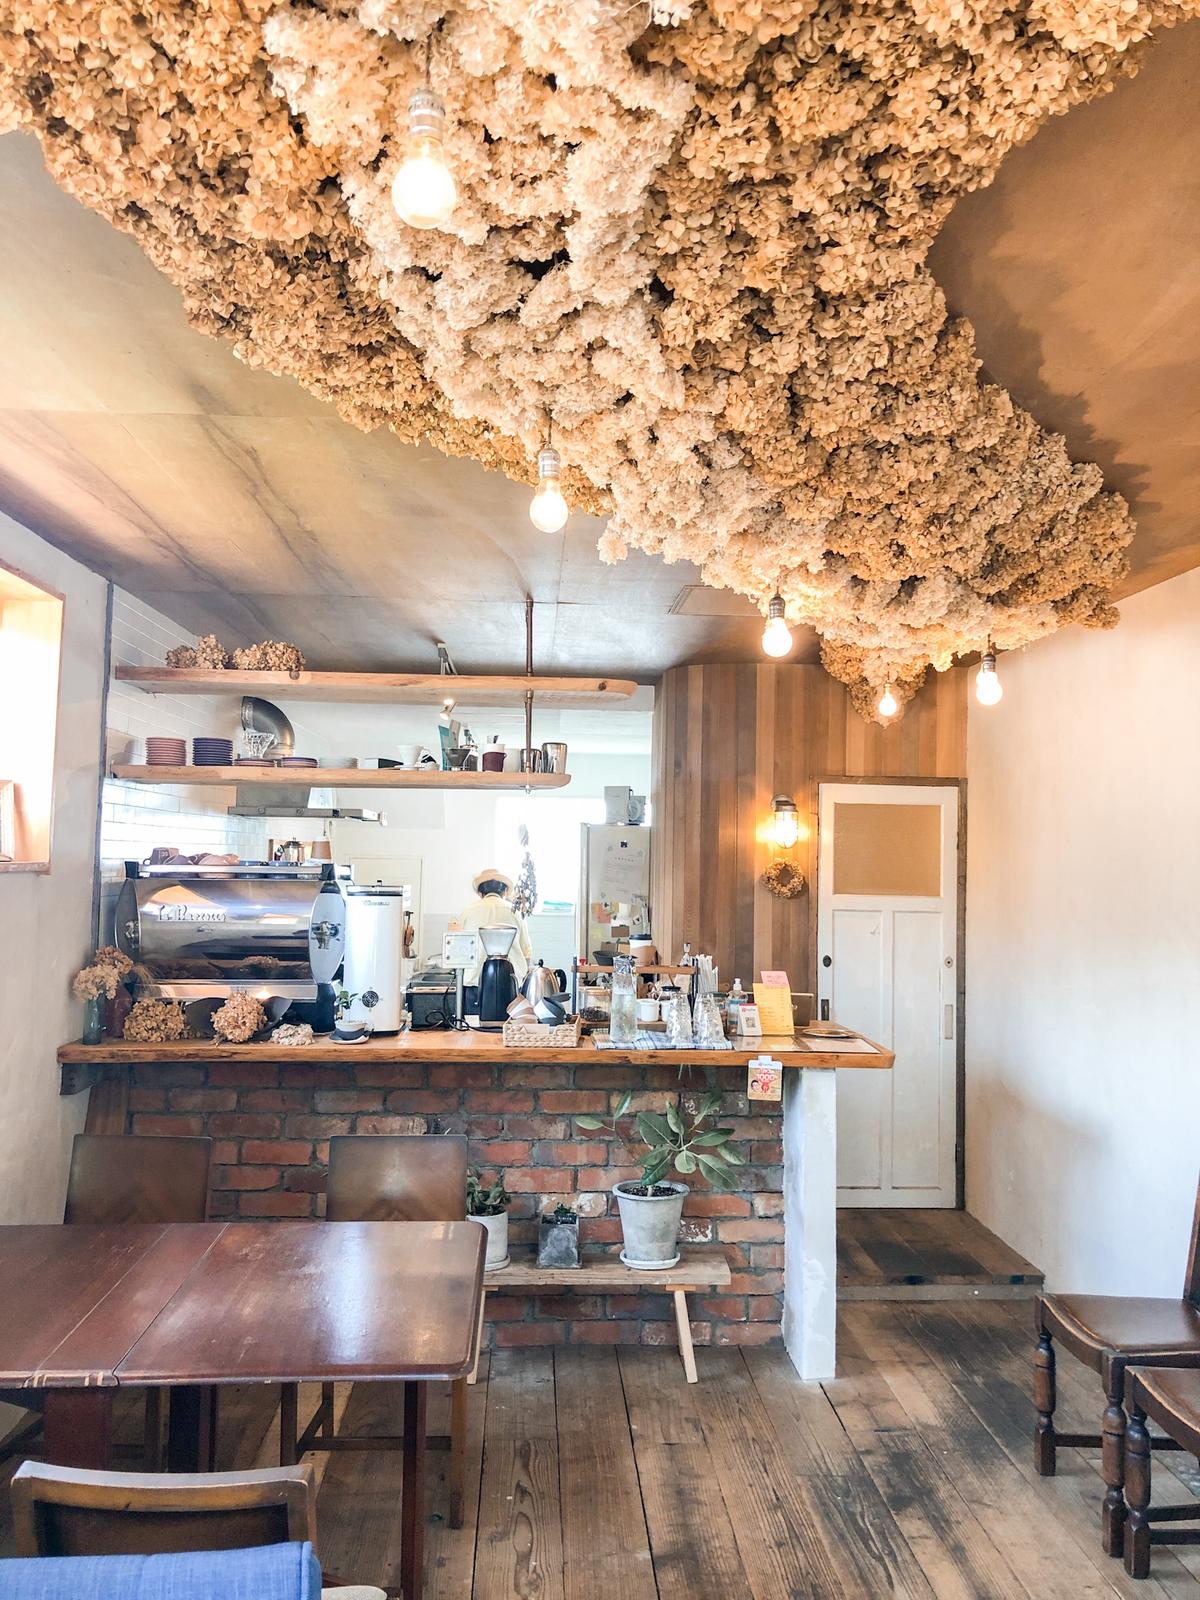 天井に天の川 神戸市にあるお洒落カフェ Aigram 57が投稿したフォトブック Sharee